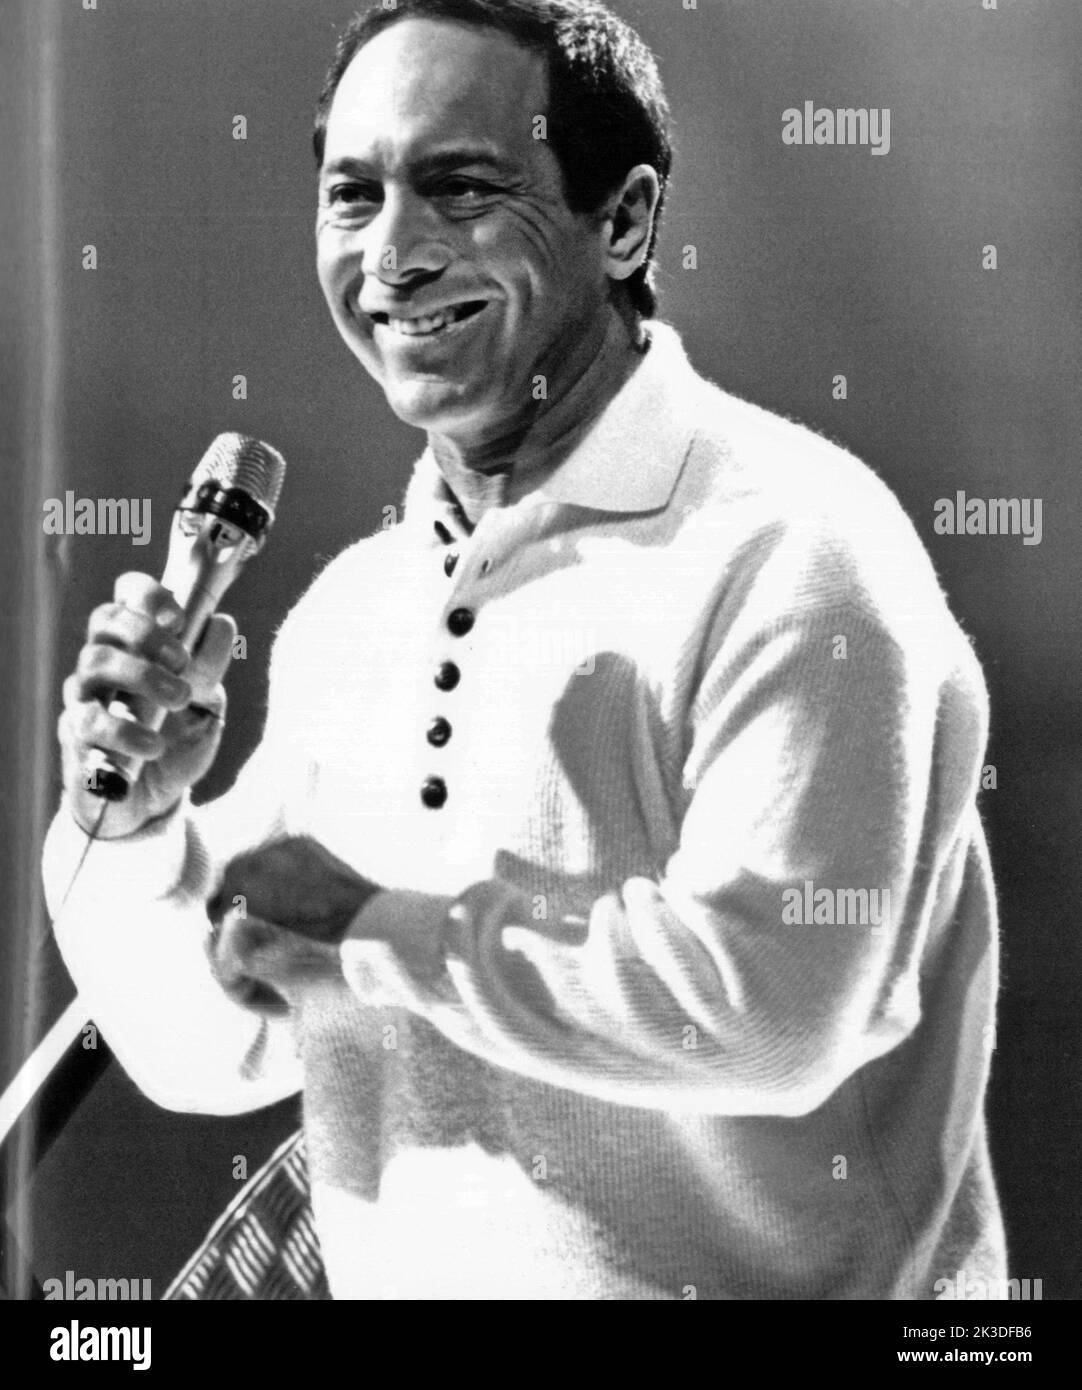 Paul Albert Anka, kanadischer Sänger, bei einem Auftritt, Anfang 1990er Jahre - Fotobuch Band 1 von 2012: Promi- Porträts fotografiert von Hartwig 'Valdi' Valdmanis Stock Photo